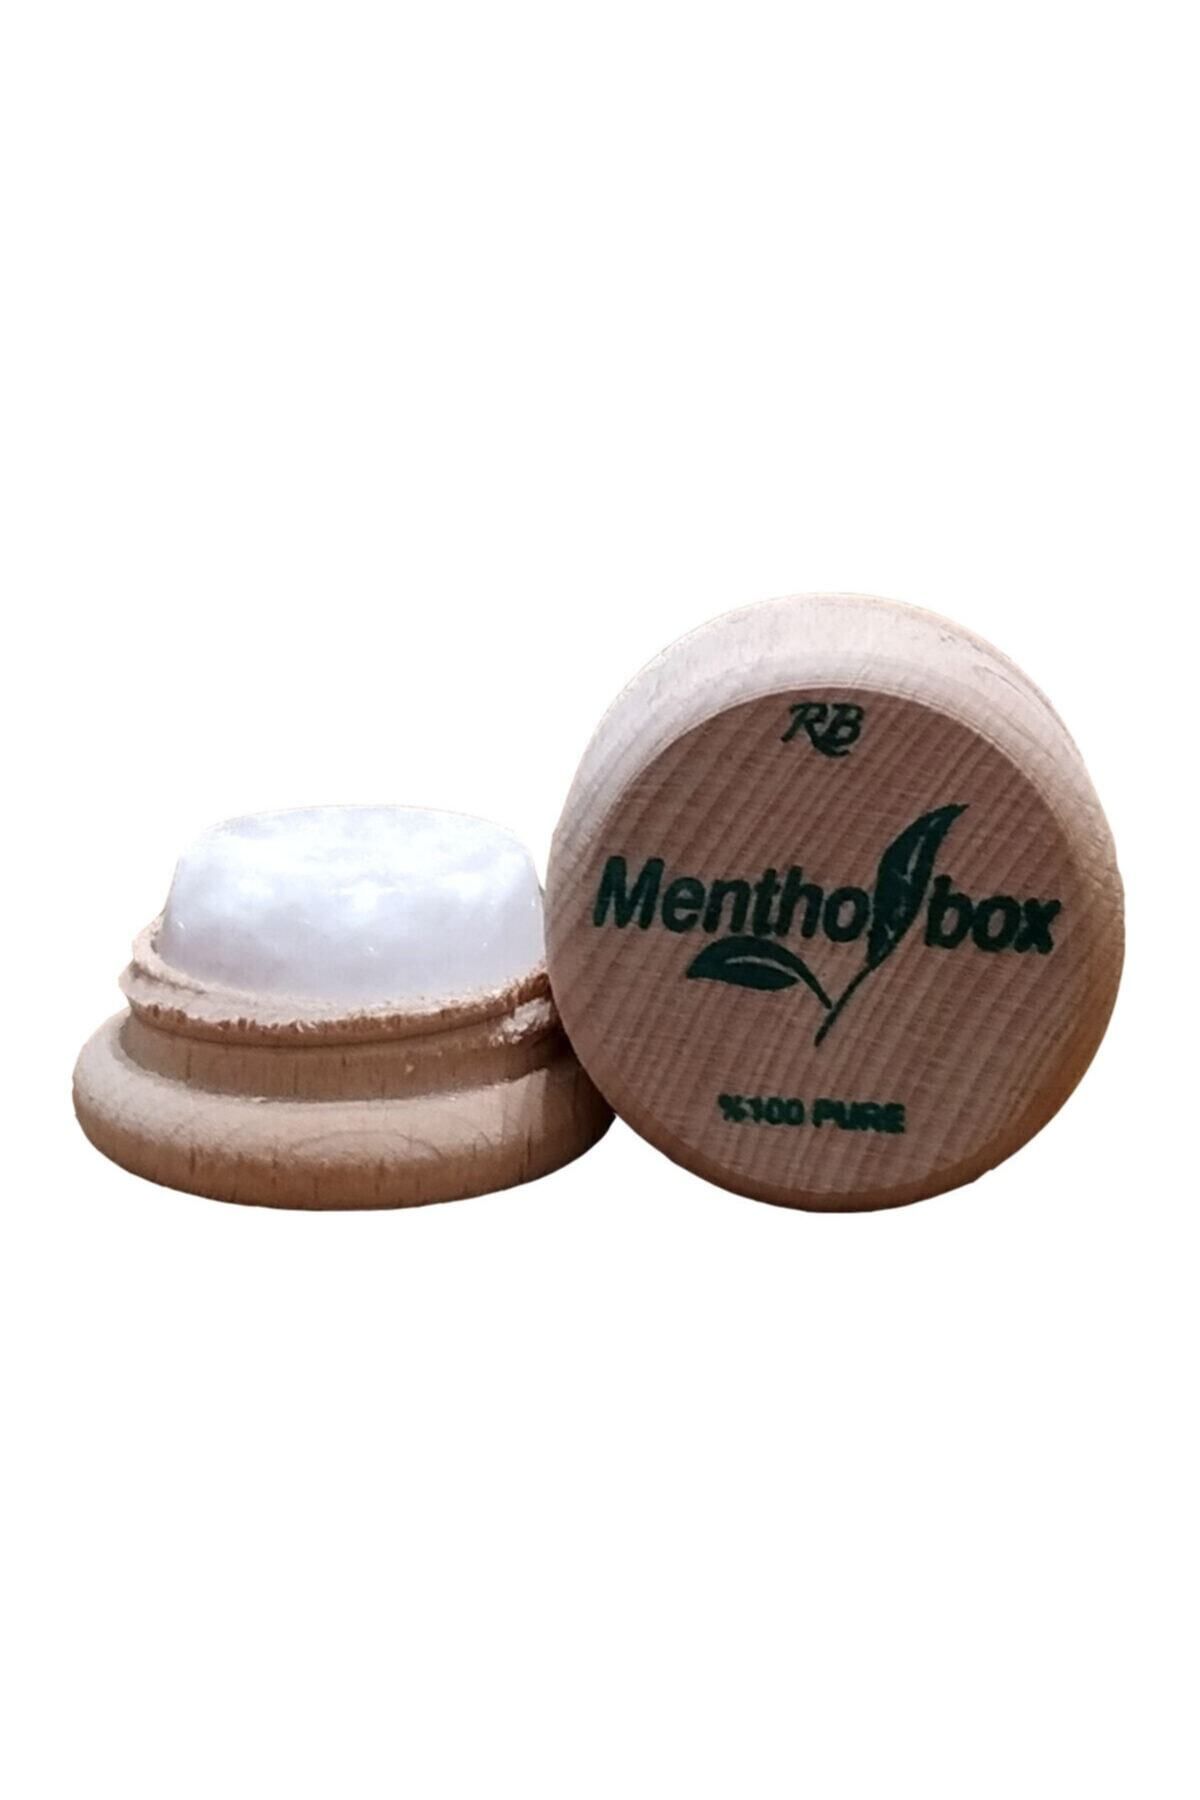 Menthol Box Menthol Taşı 6 gr Üç Adet